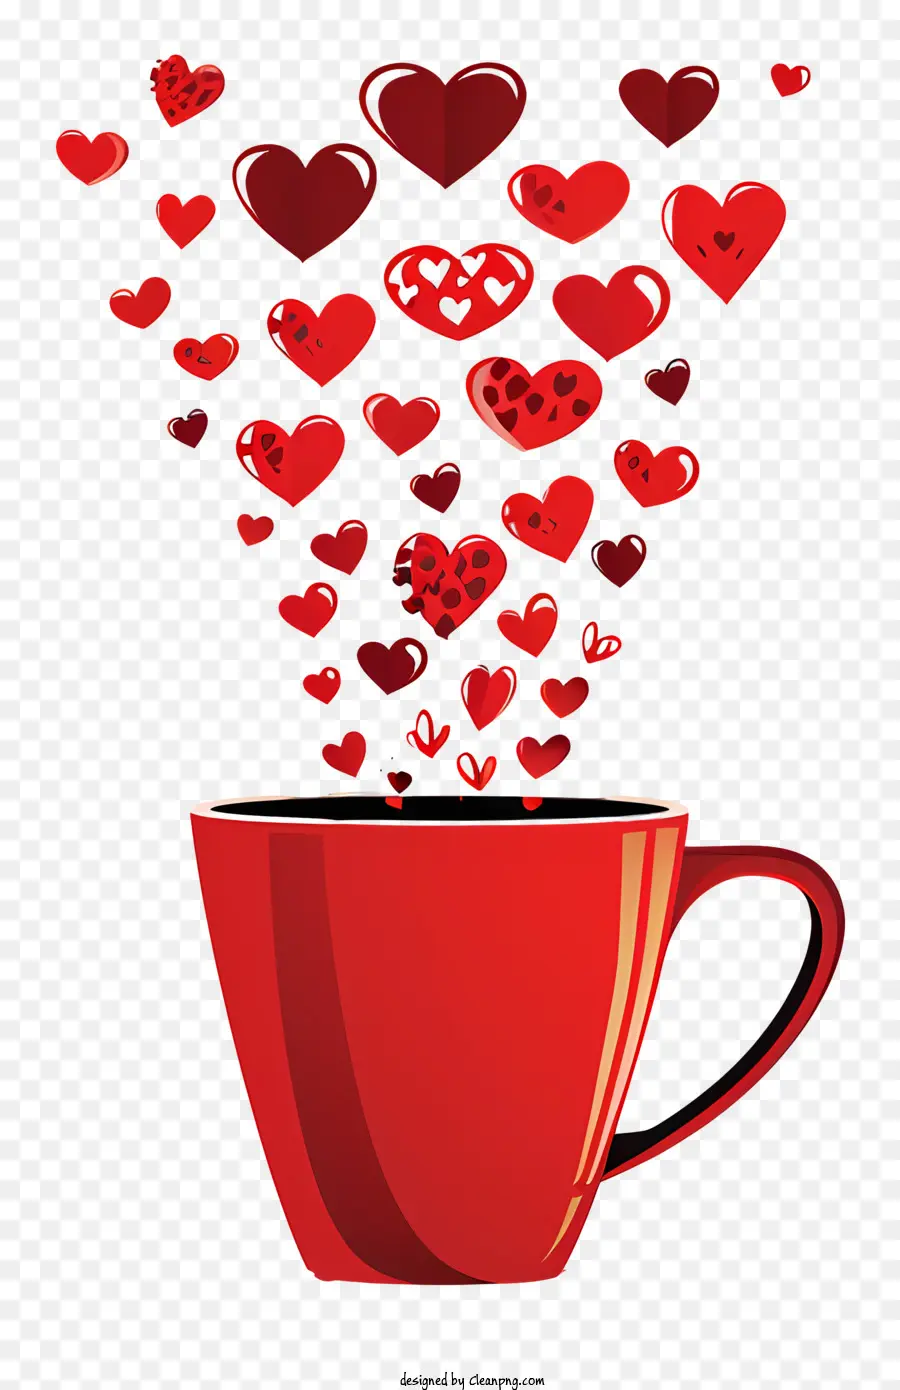 biểu tượng tình yêu - Cup với trái tim bay, nền đen, chủ đề tình yêu